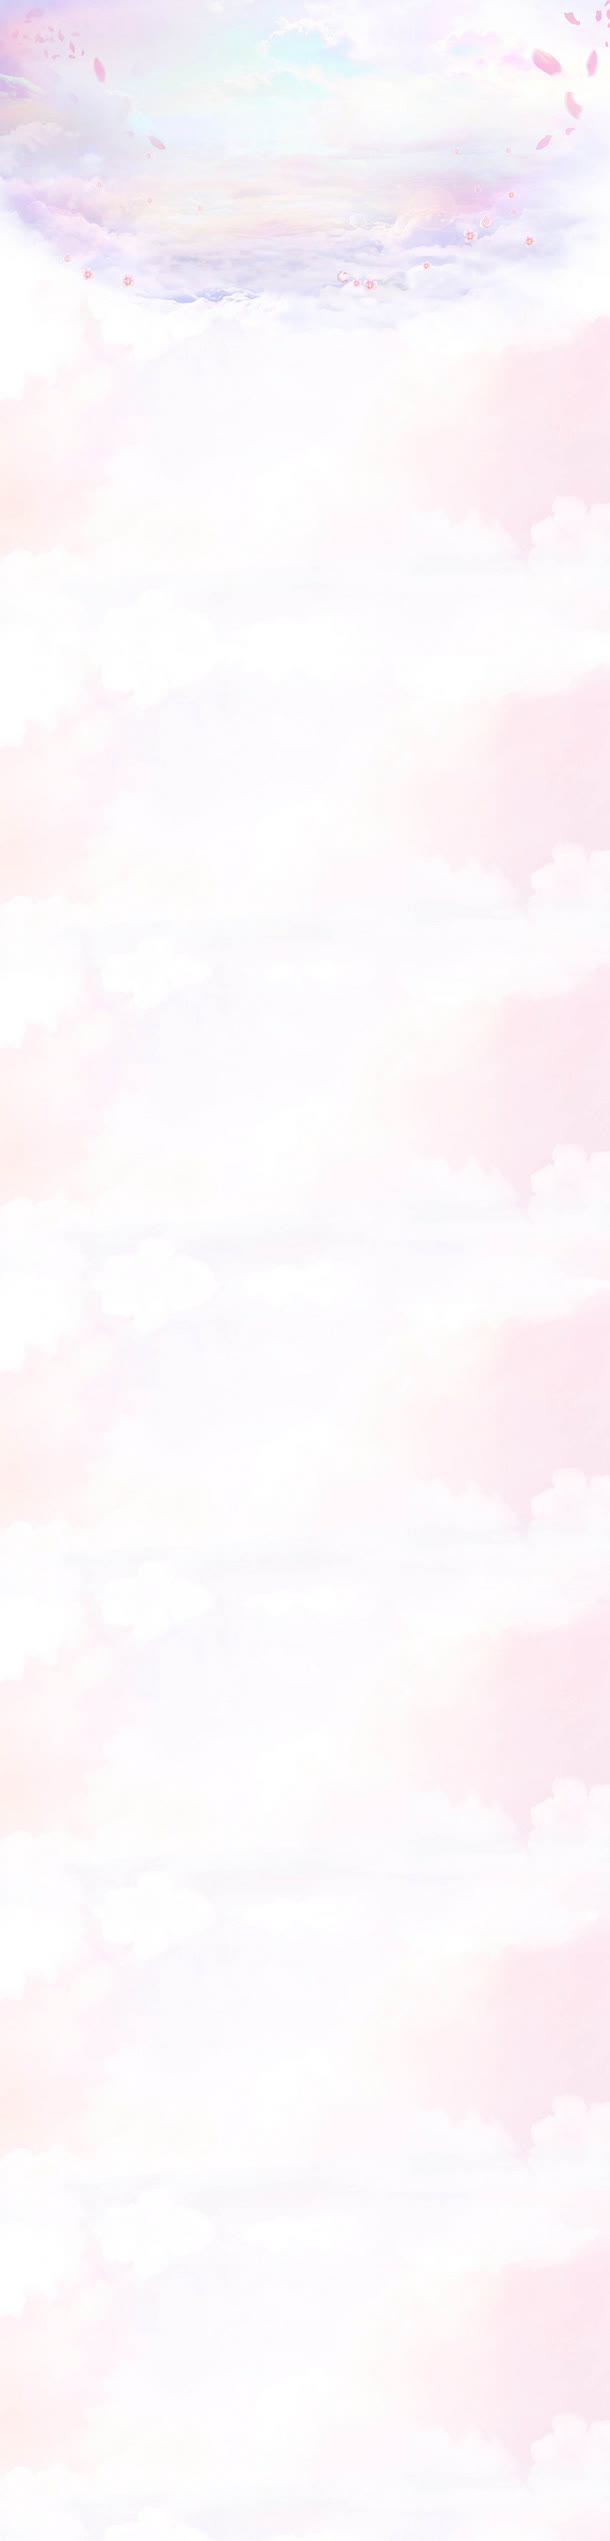 粉白色云彩花瓣天空